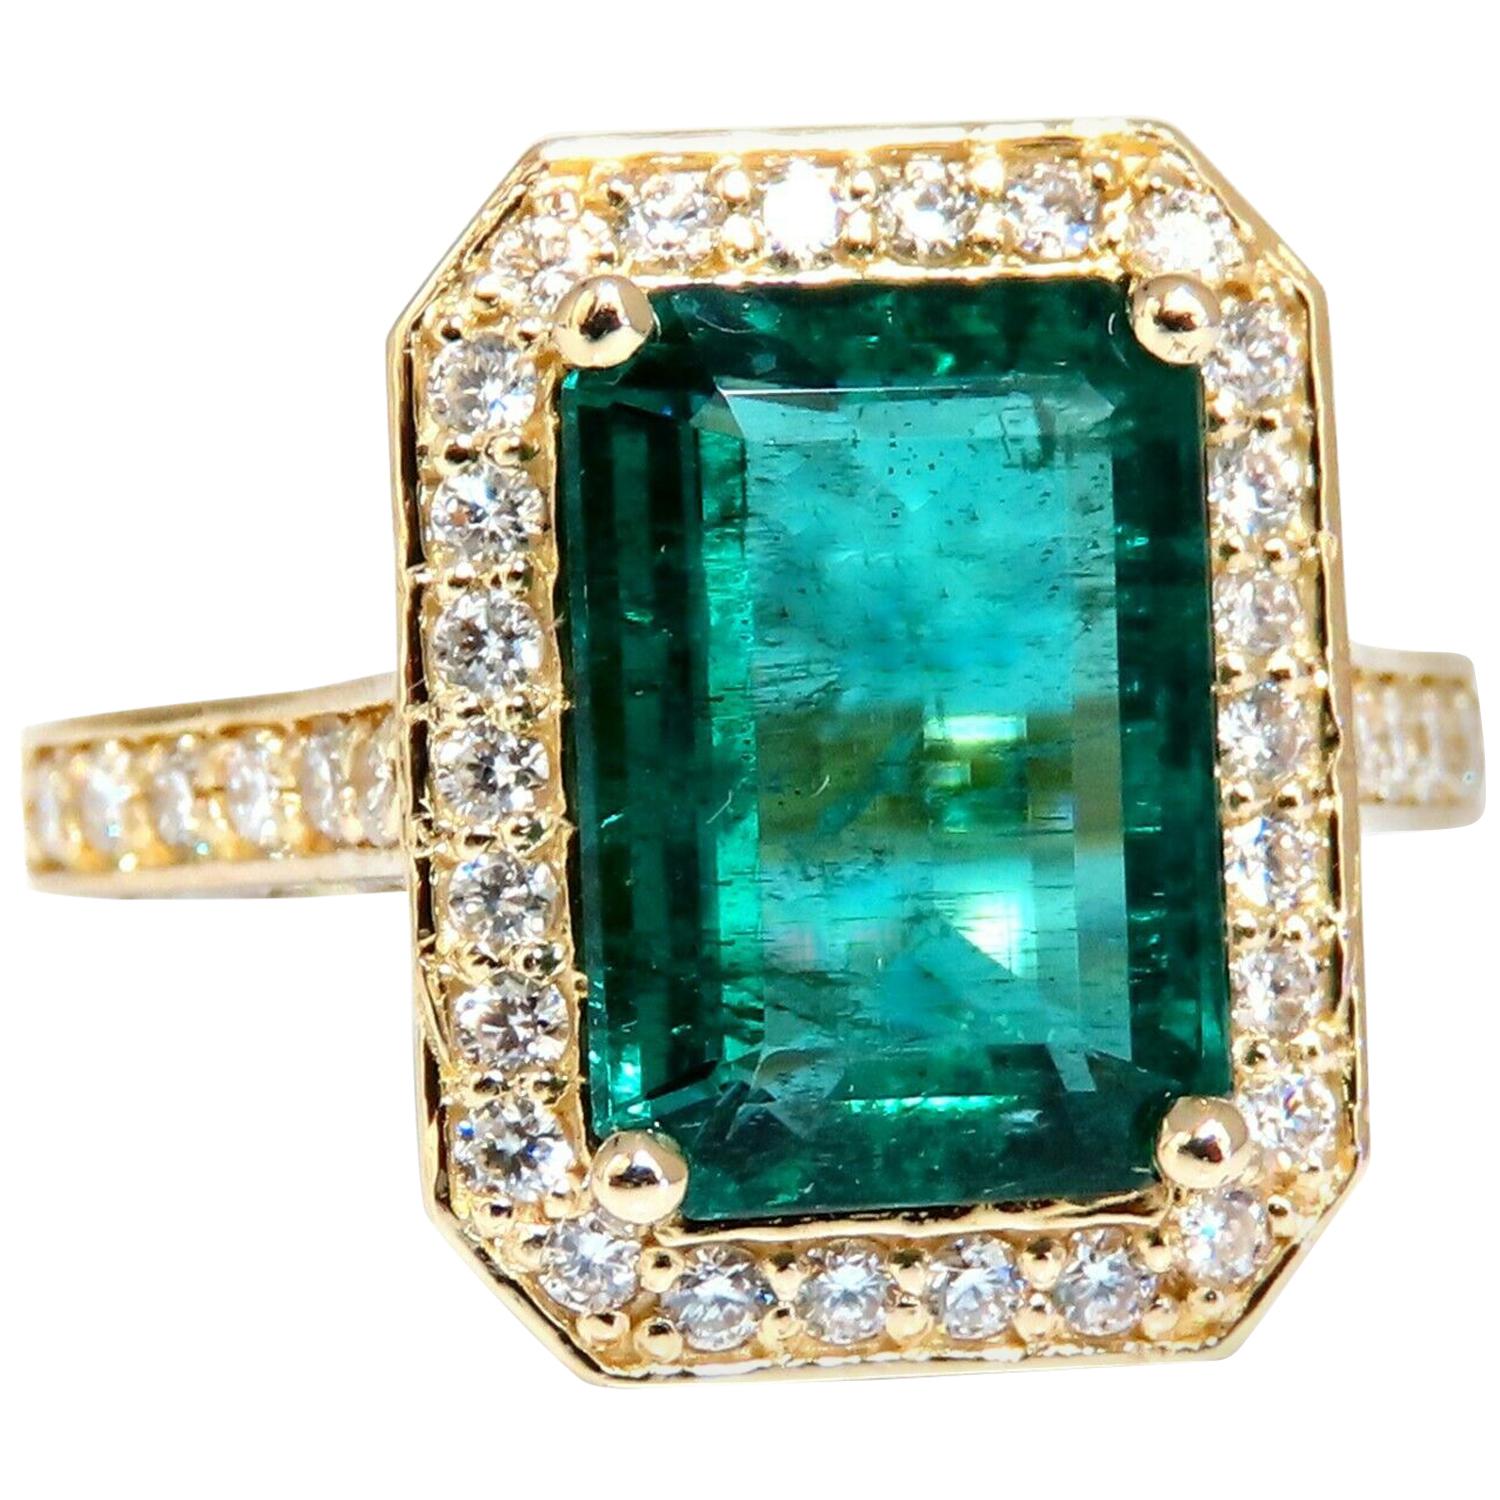 5.40 Carat Natural Vivid Green Emerald Diamonds Gilt Deco Ring 14 Karat